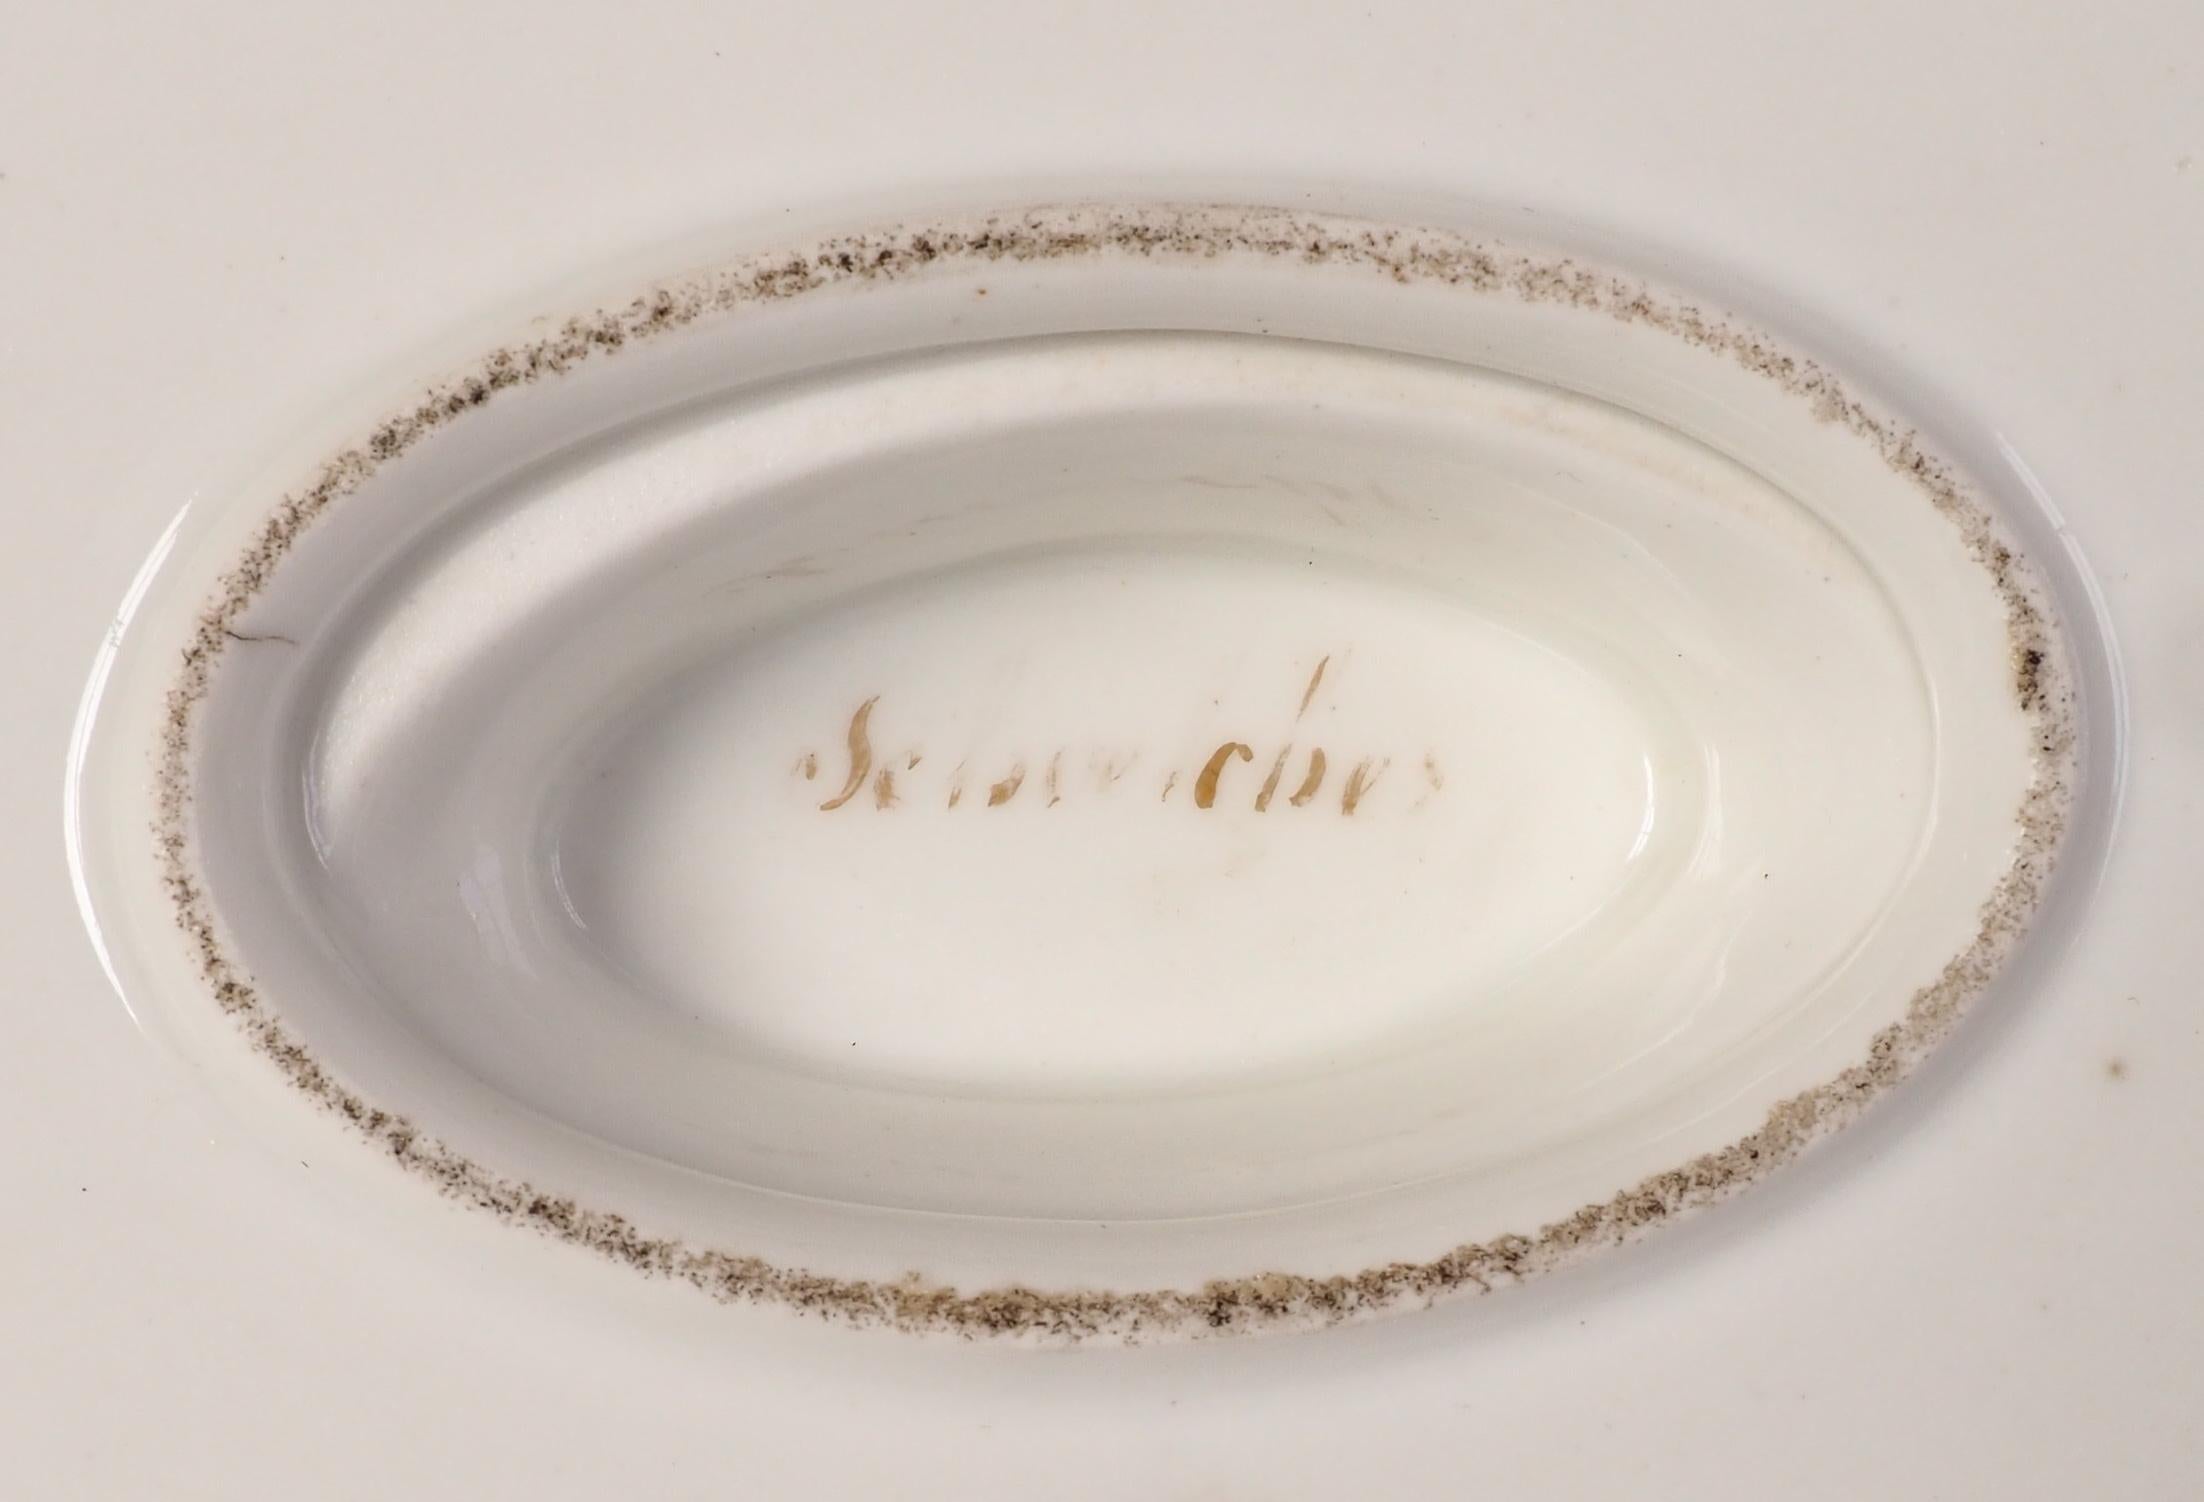 Schoelcher Manufacture : Empire Paris porcelain sauce boat 19th century - signed 8